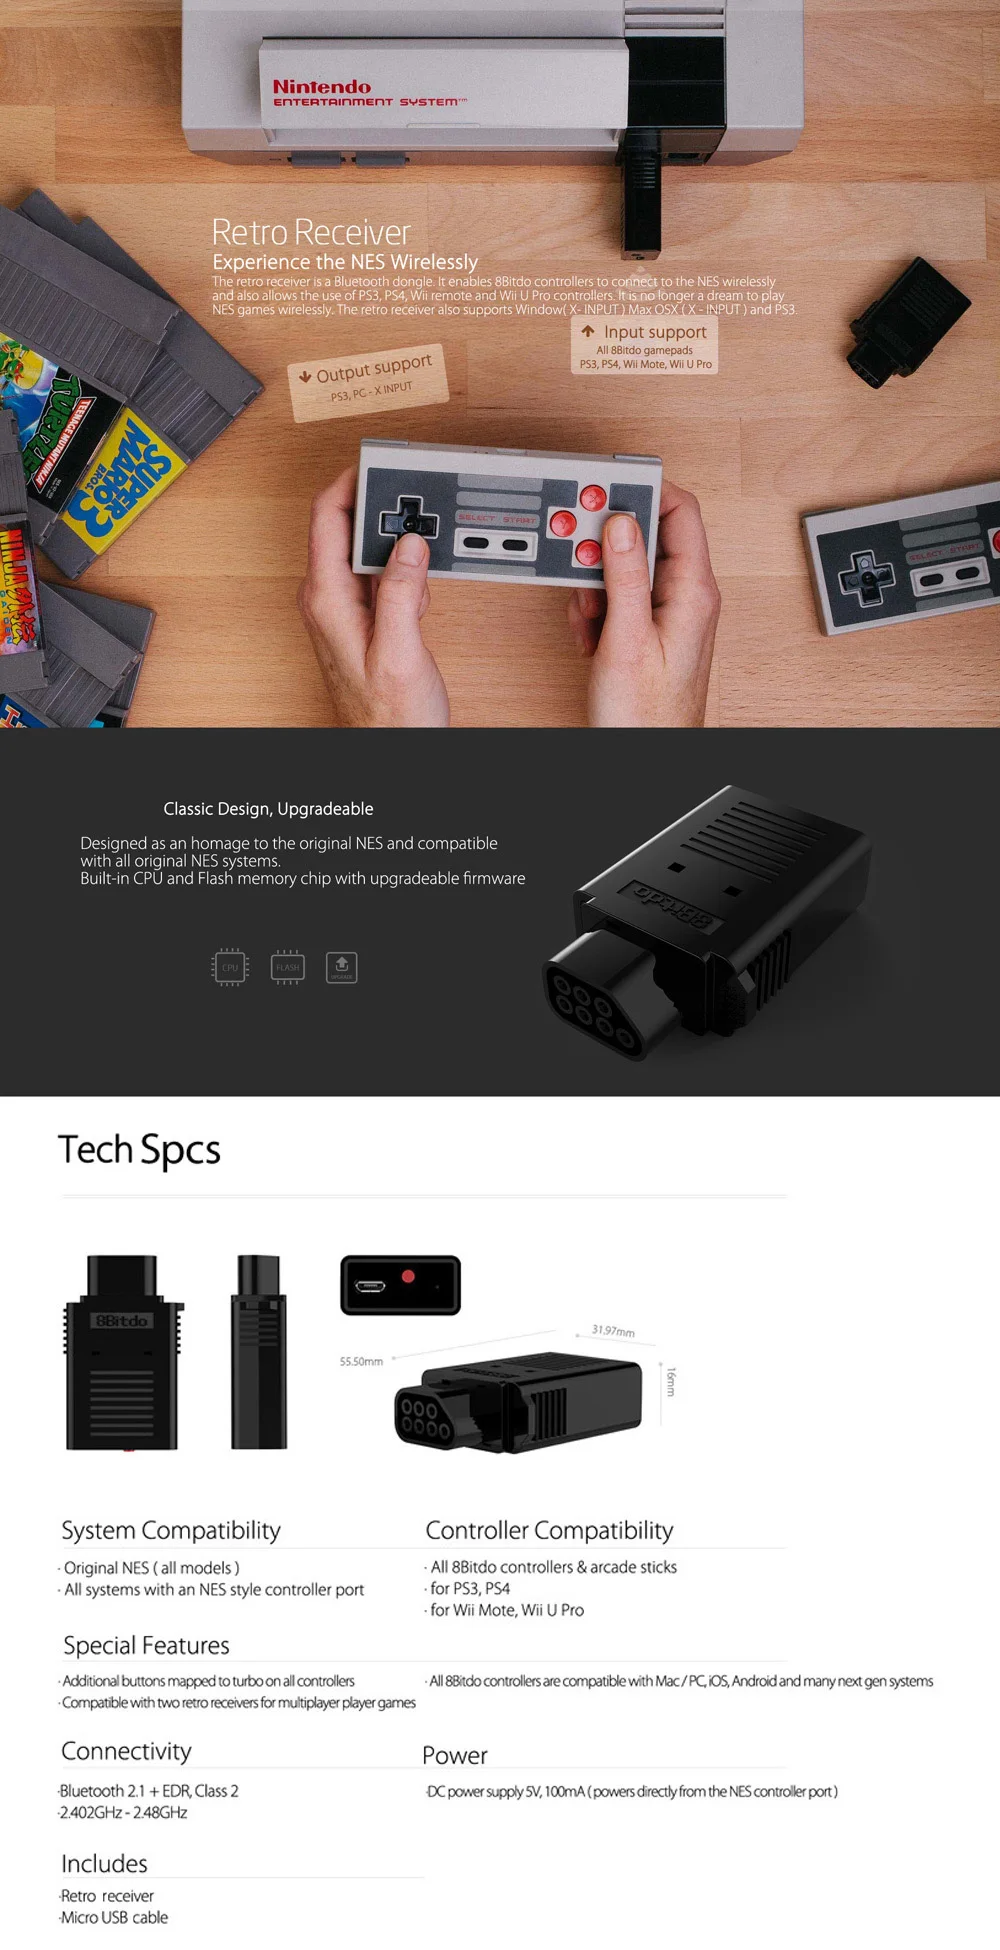 8Bitdo Ретро приемник для NES игровой контроллер совместим с PS3/PS4/wii Mote/wii U Pro игровые контроллеры Finger Spinner